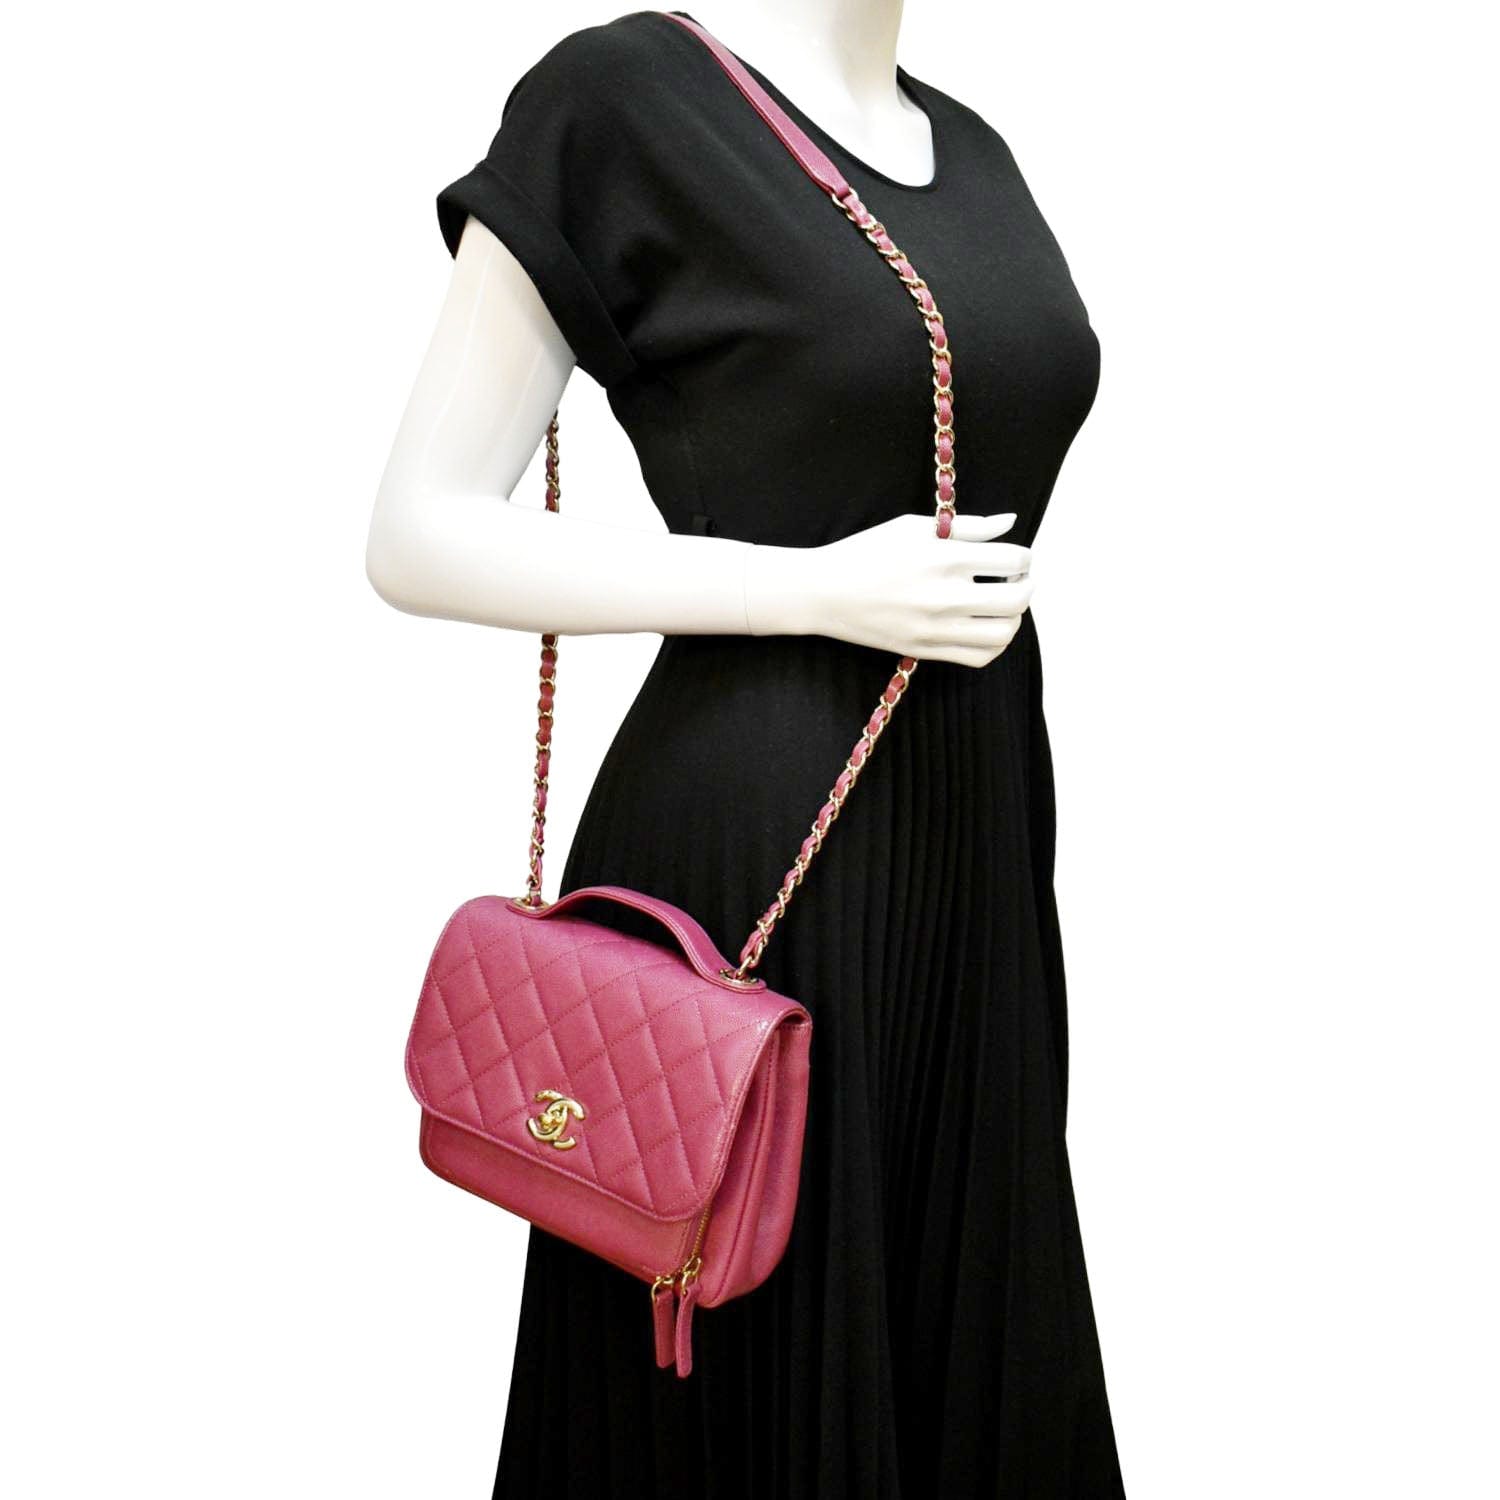 Chanel Business Affinity Medium Flap Shoulder Bag